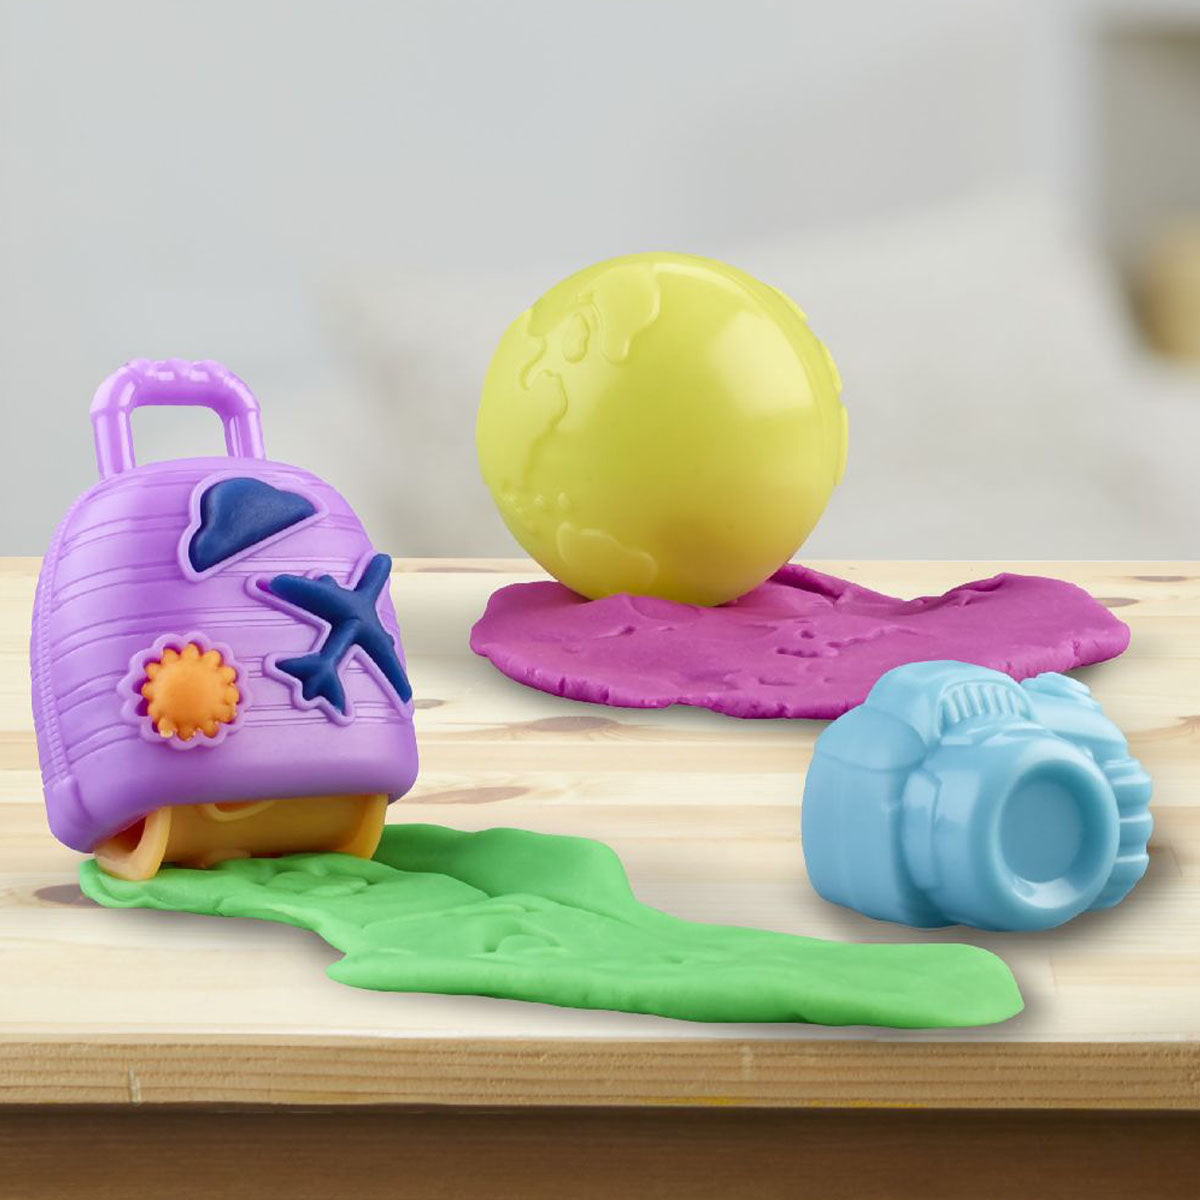 Lekker kliederen en creatief bezig zijn, welk kind houdt daar niet van?! Met deze airplane explorer starterset van het merk Play-Doh is dat geen probleem!  Met dit vliegtuigspeelgoed kunnen kinderen op allerlei manieren spelen met Play-Doh-boetseerklei en fantaseren over wereldwijde reisavonturen. VanZus